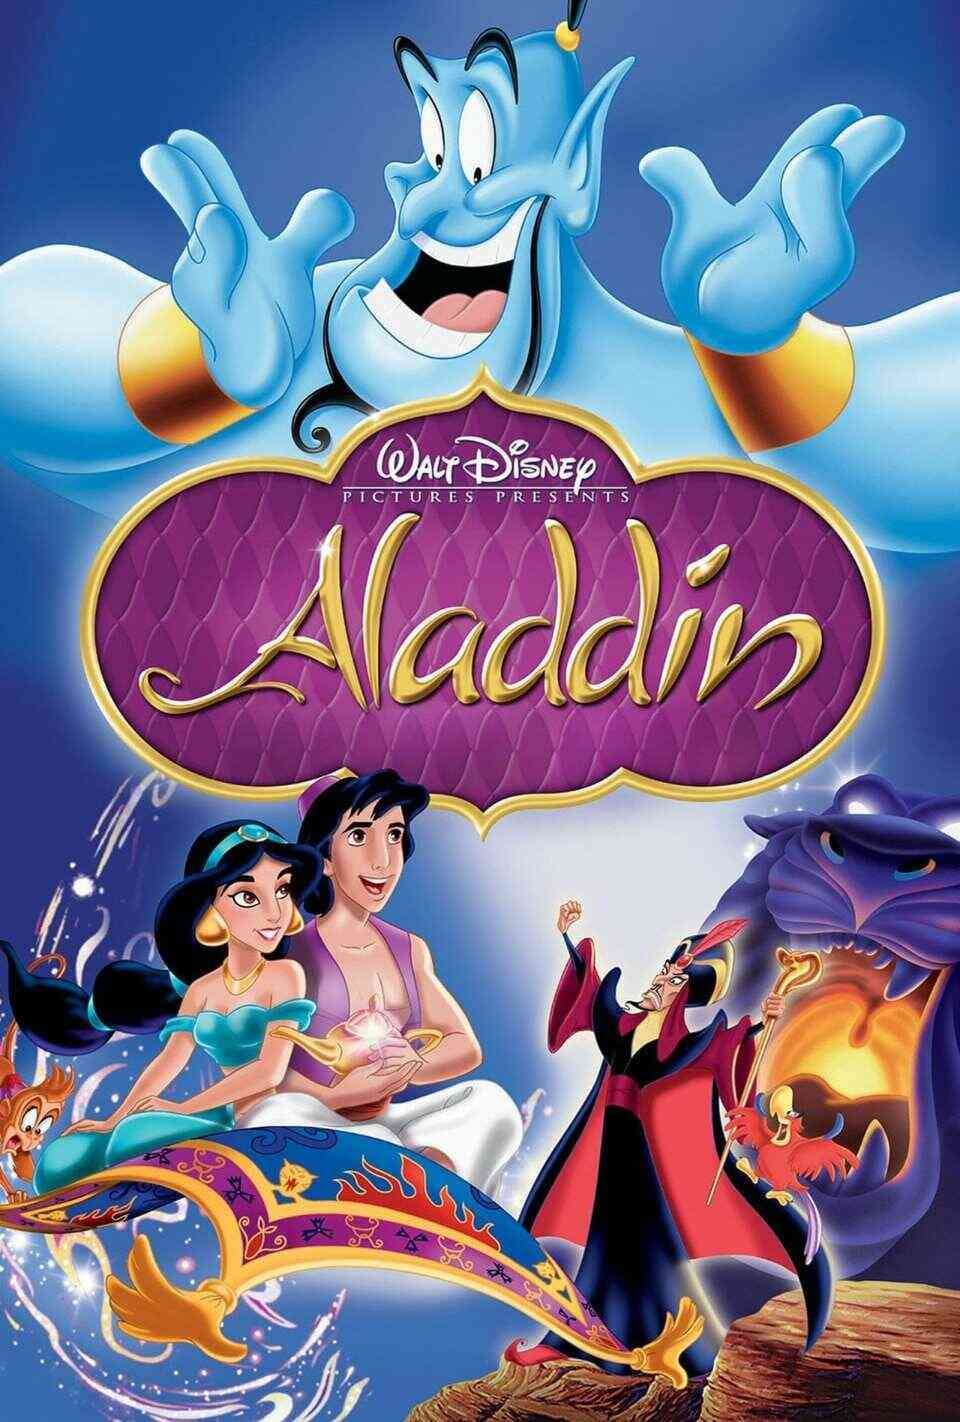 Read Aladdin screenplay.